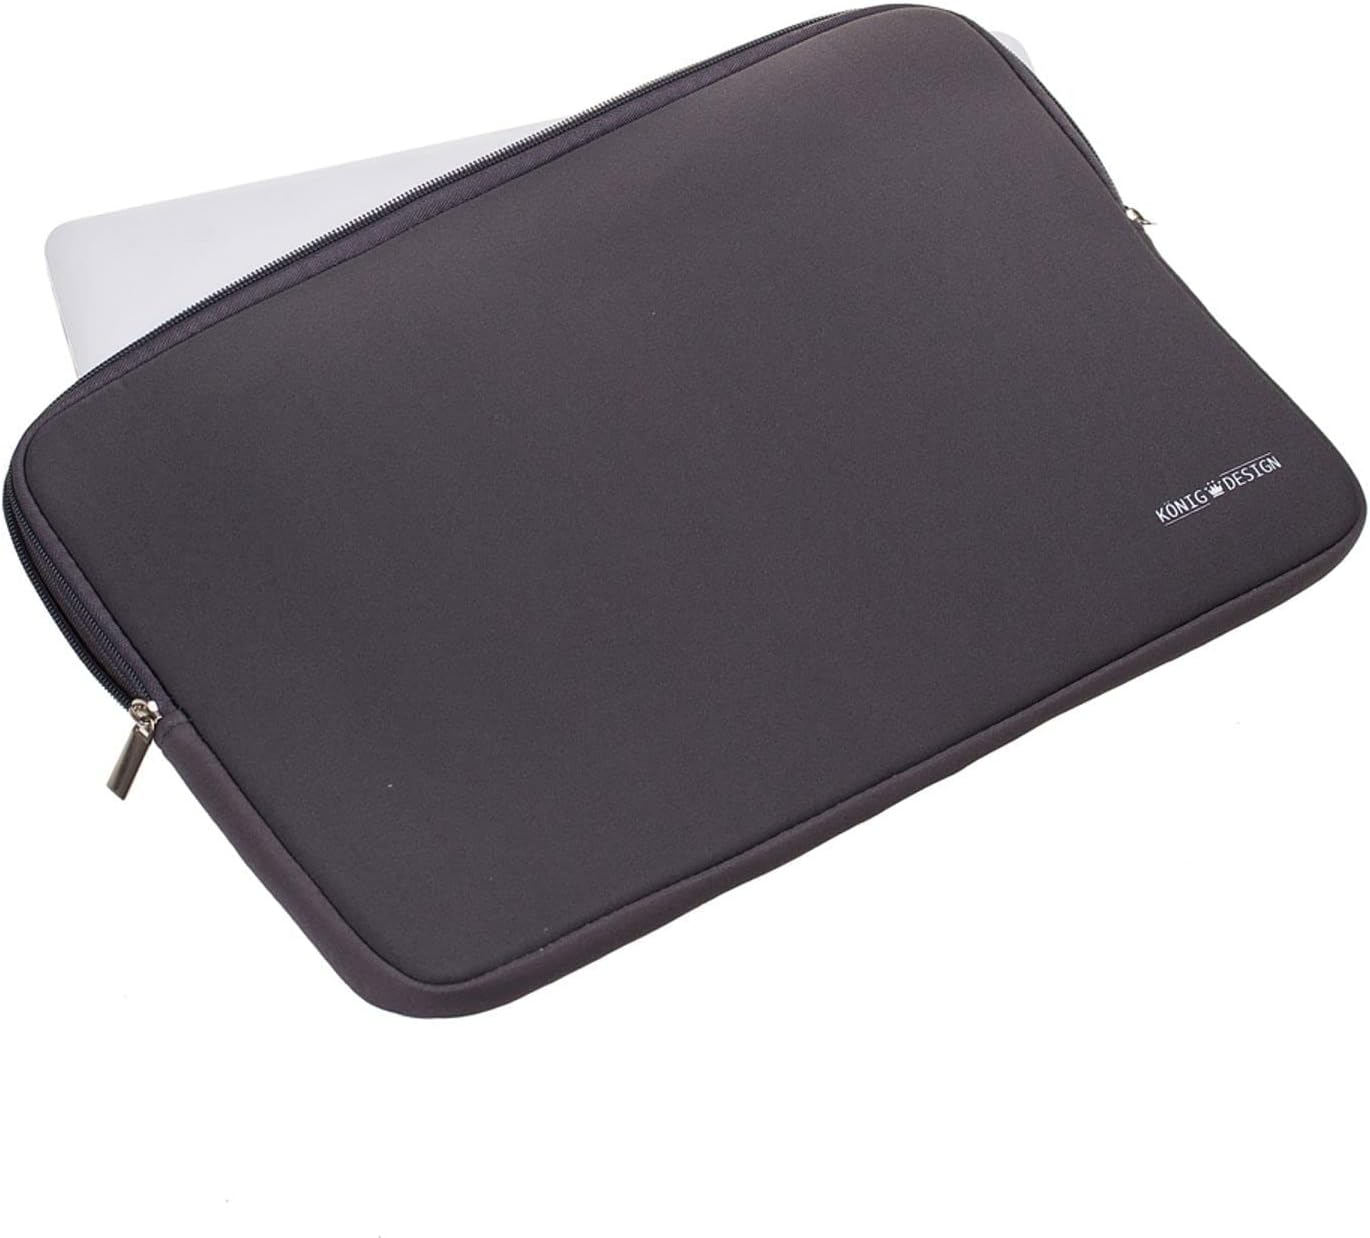 König Design Laptop Bag Laptop Sleeve 13 Inch Shockproof Notebook Bag Laptop Protective Case Notebook Sleeve Case PC Laptop Protective Case Grey